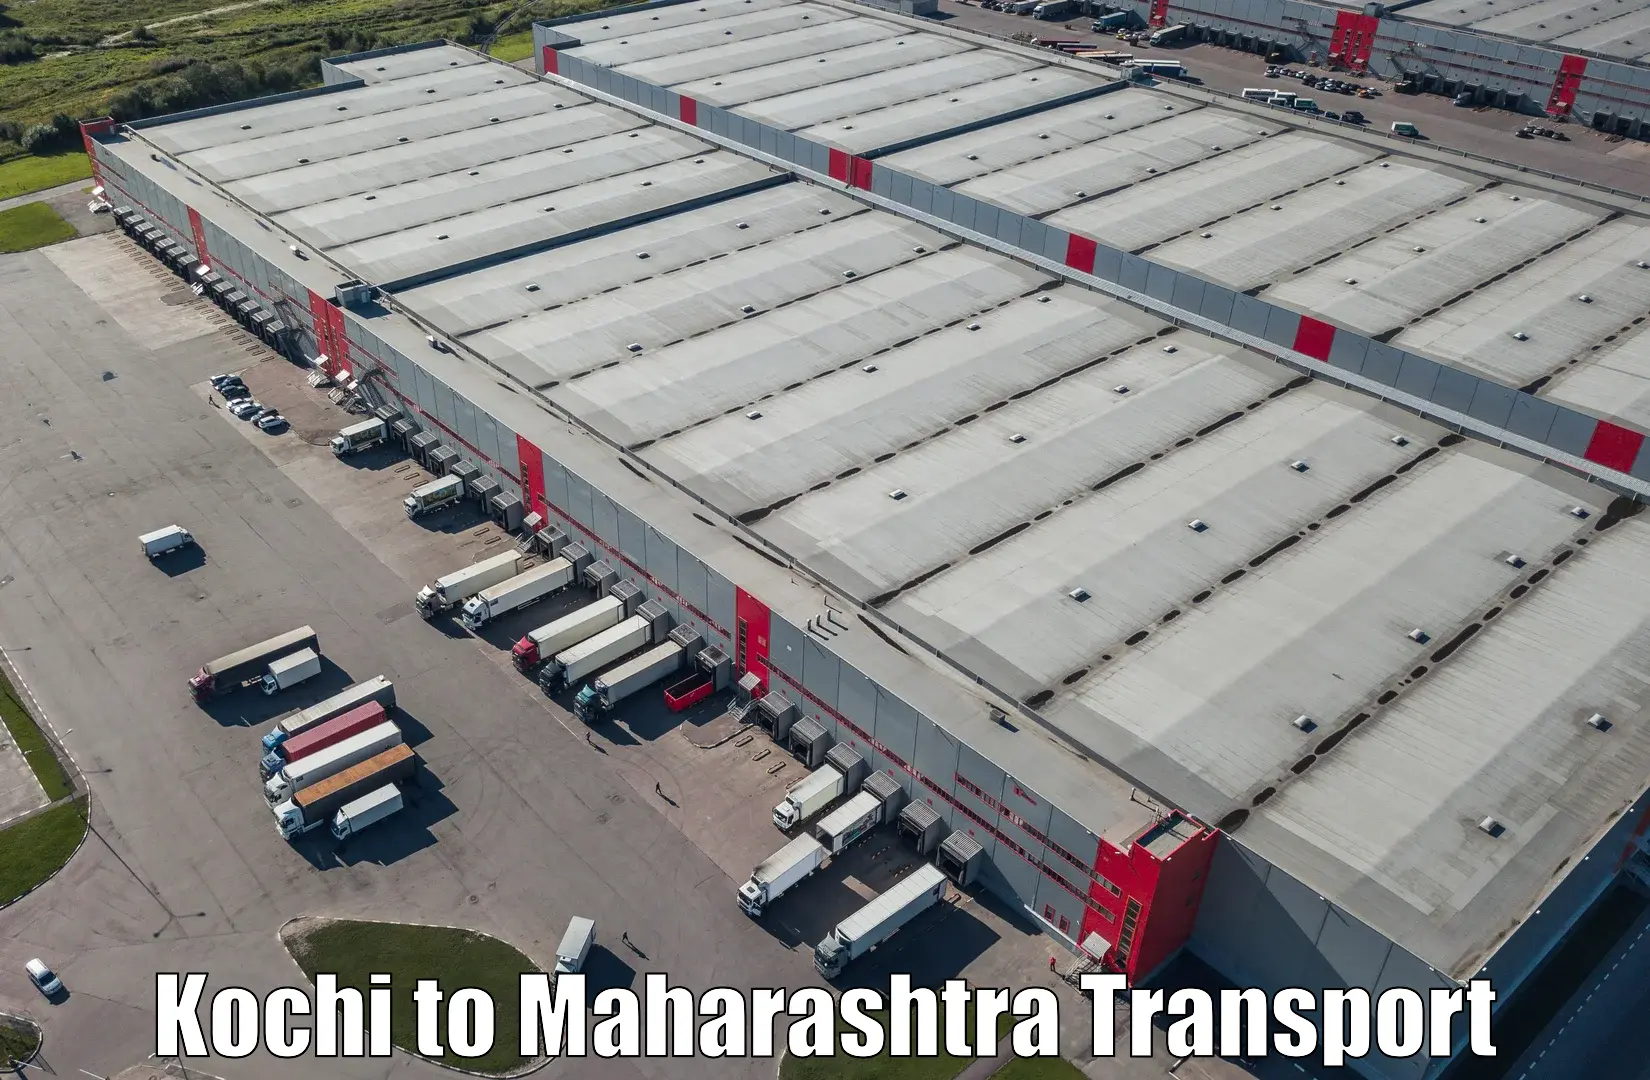 Furniture transport service Kochi to Kudus